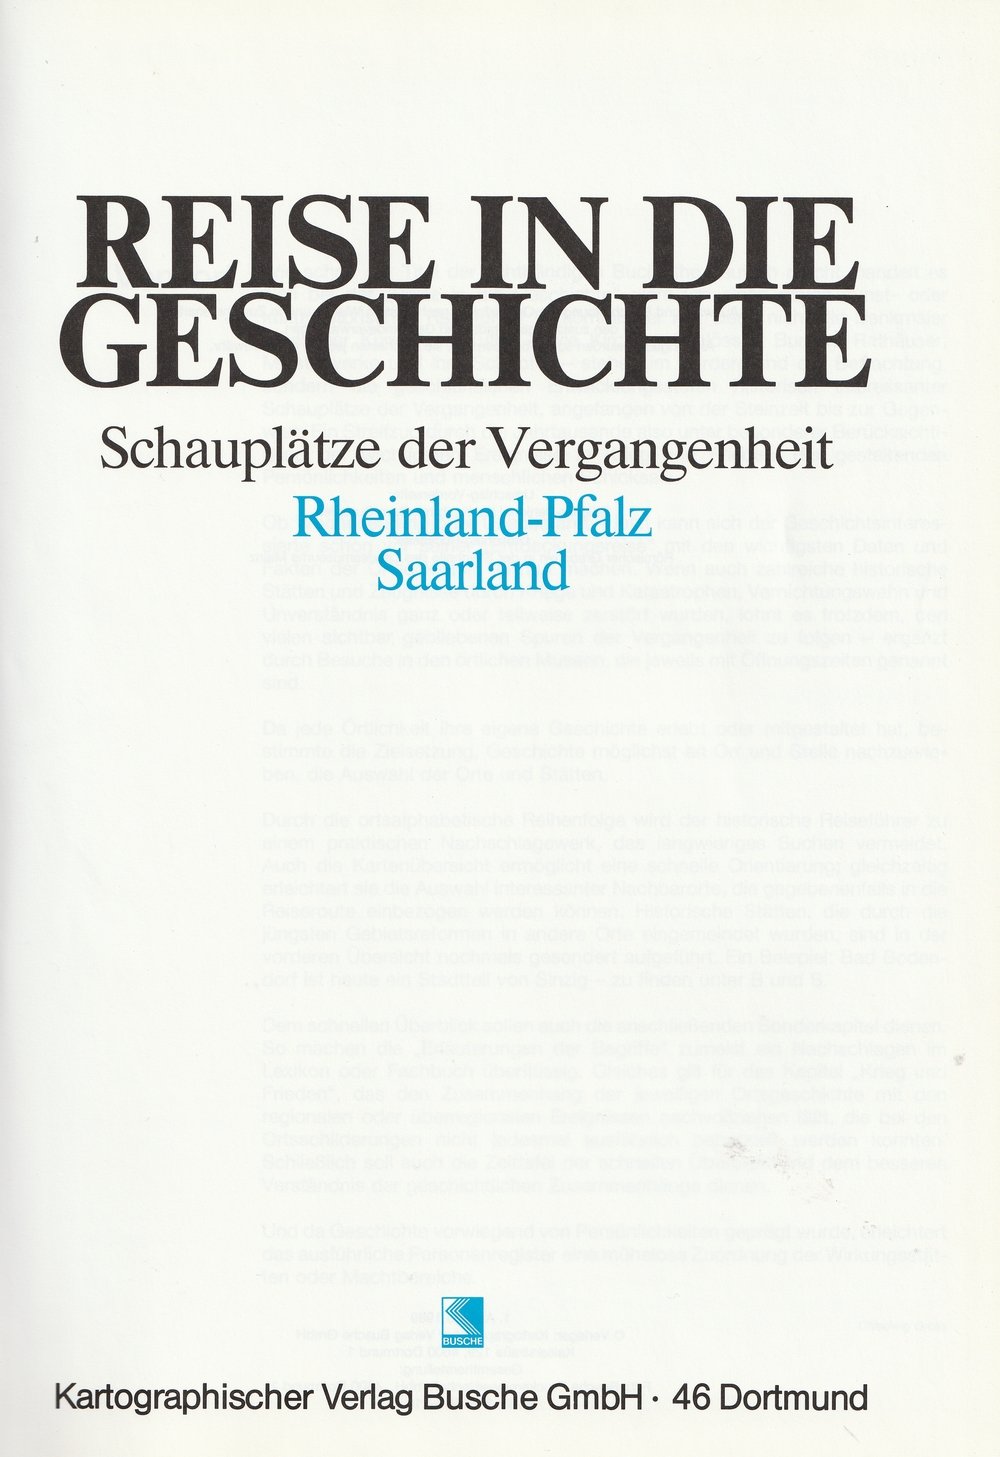 Schauplätze der Vergangenheit - Reise in die Geschichte - Rheinland-Pfalz und Saarland (Kulturverein Guntersblum CC BY-NC-SA)